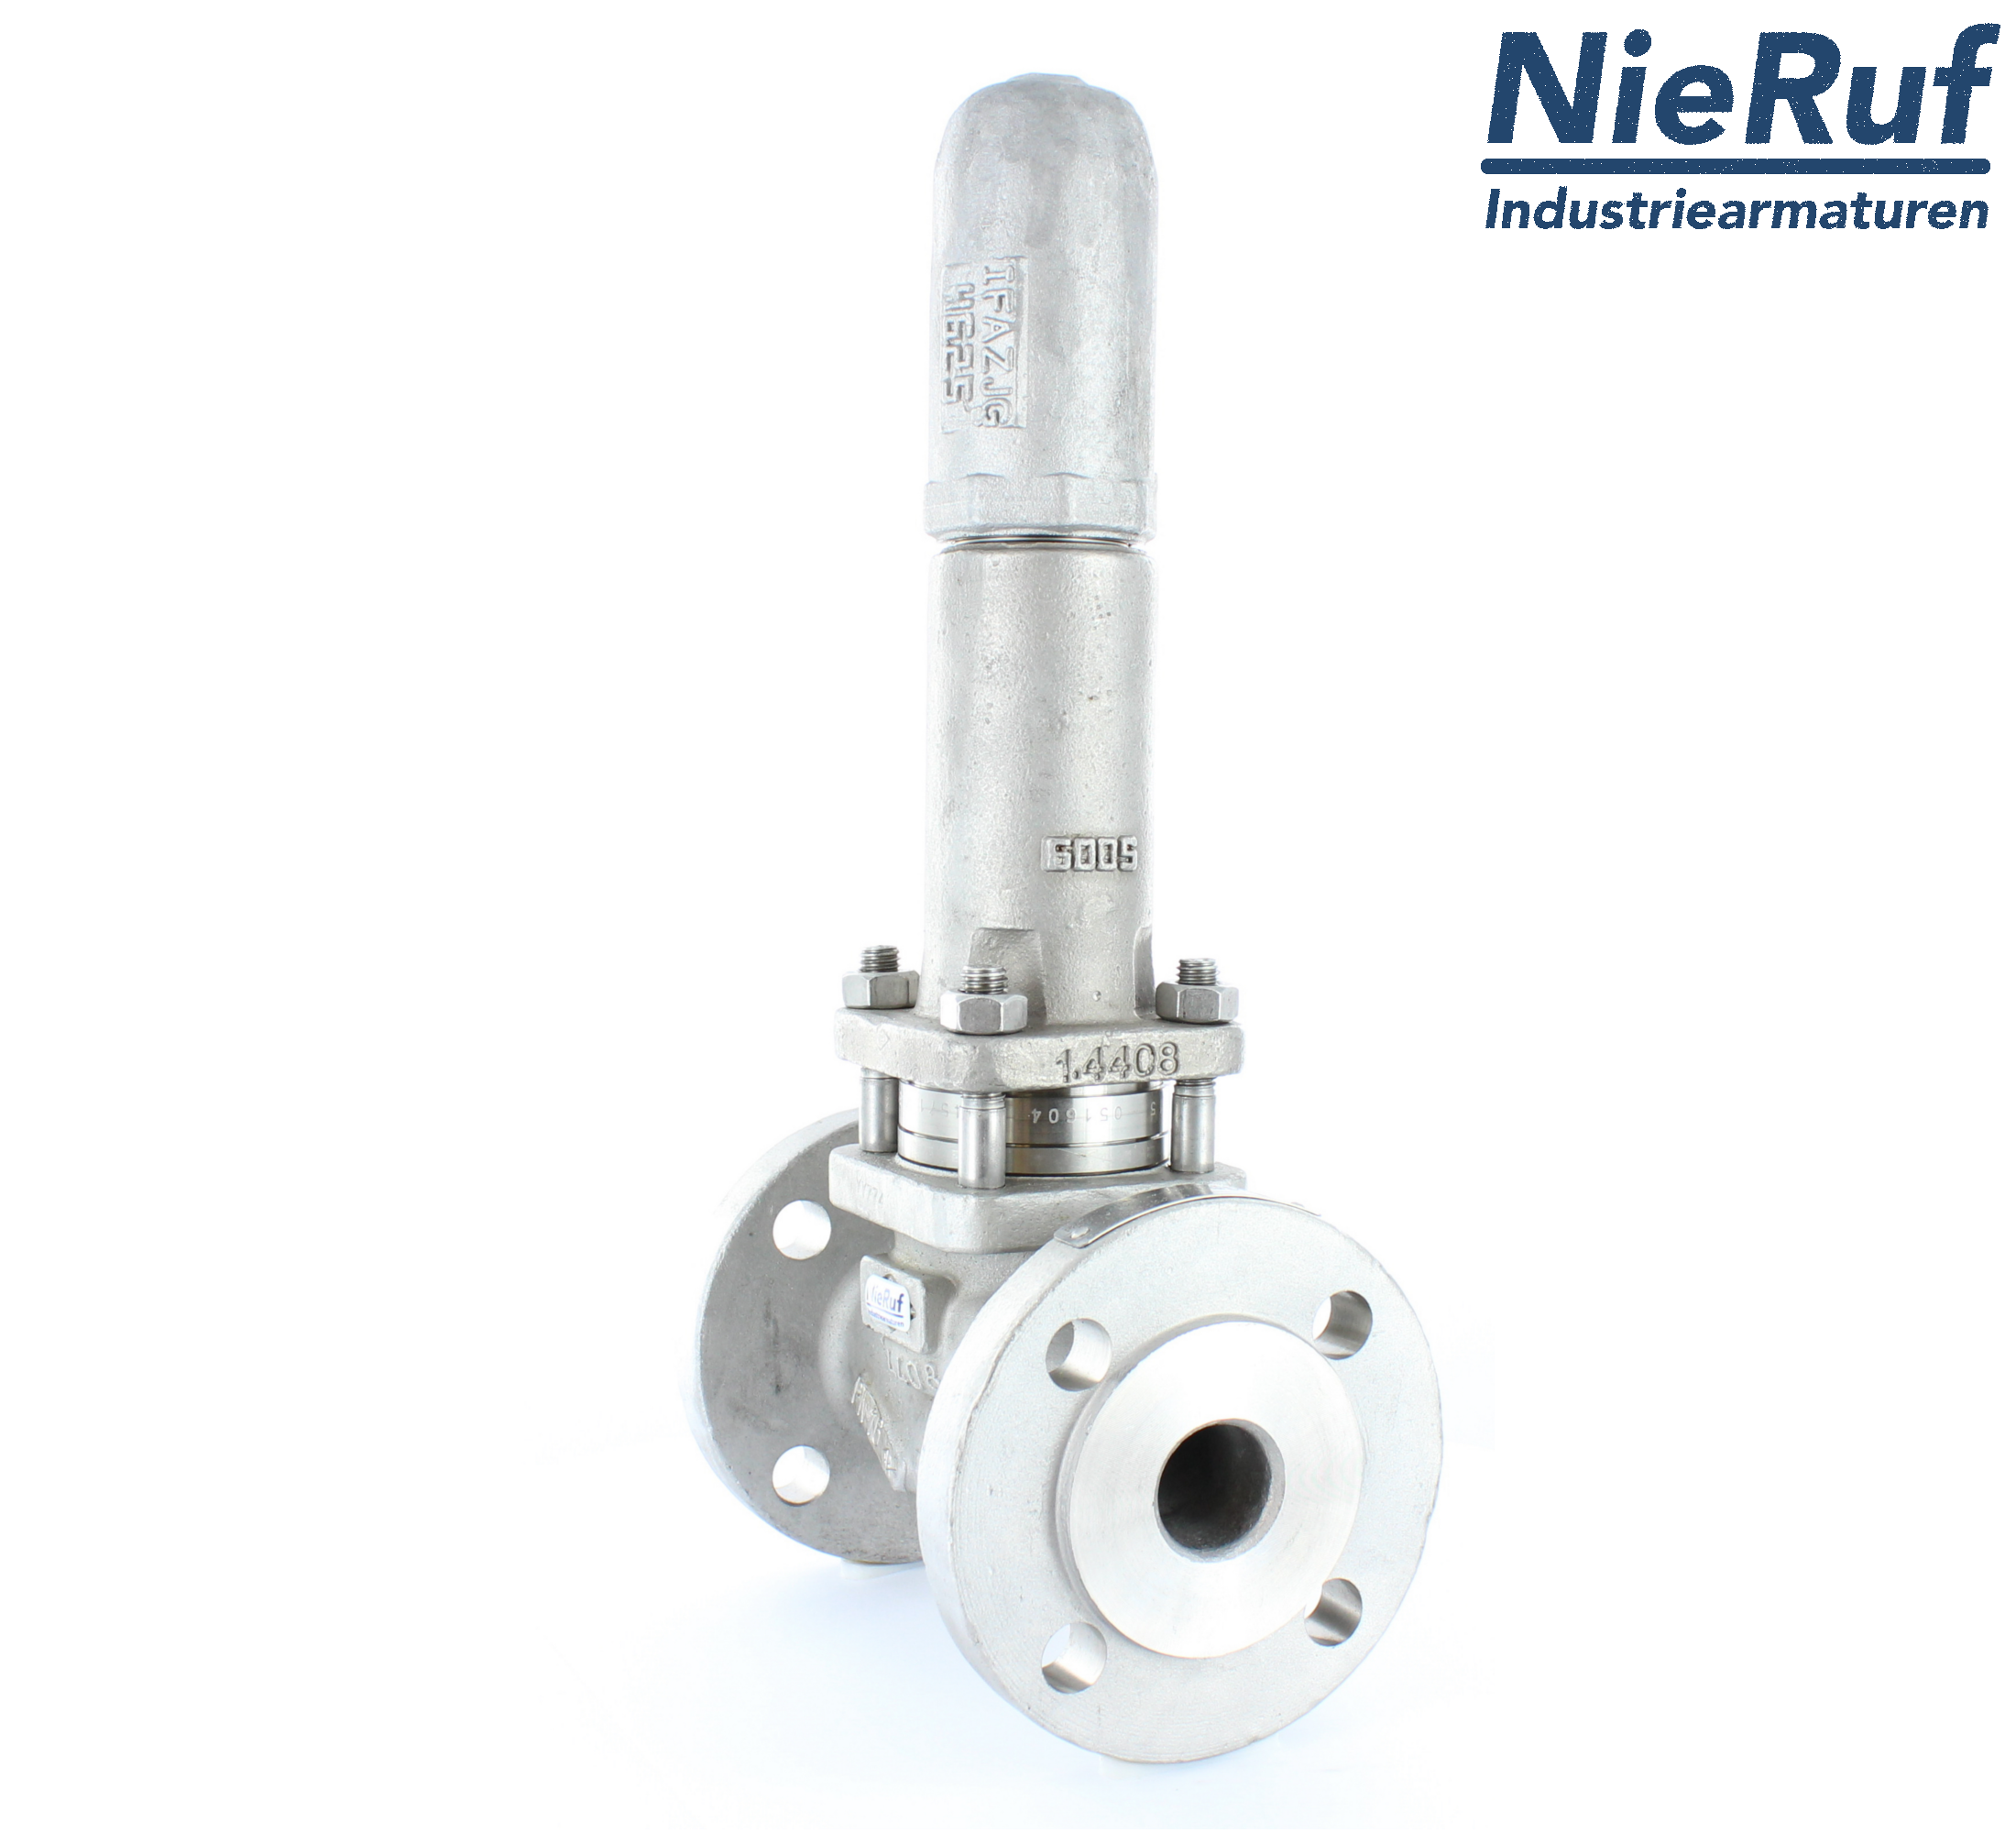 piston overflow valve DN 80 UV13 cast iron 1.0619+N 1,0 - 3,0 bar